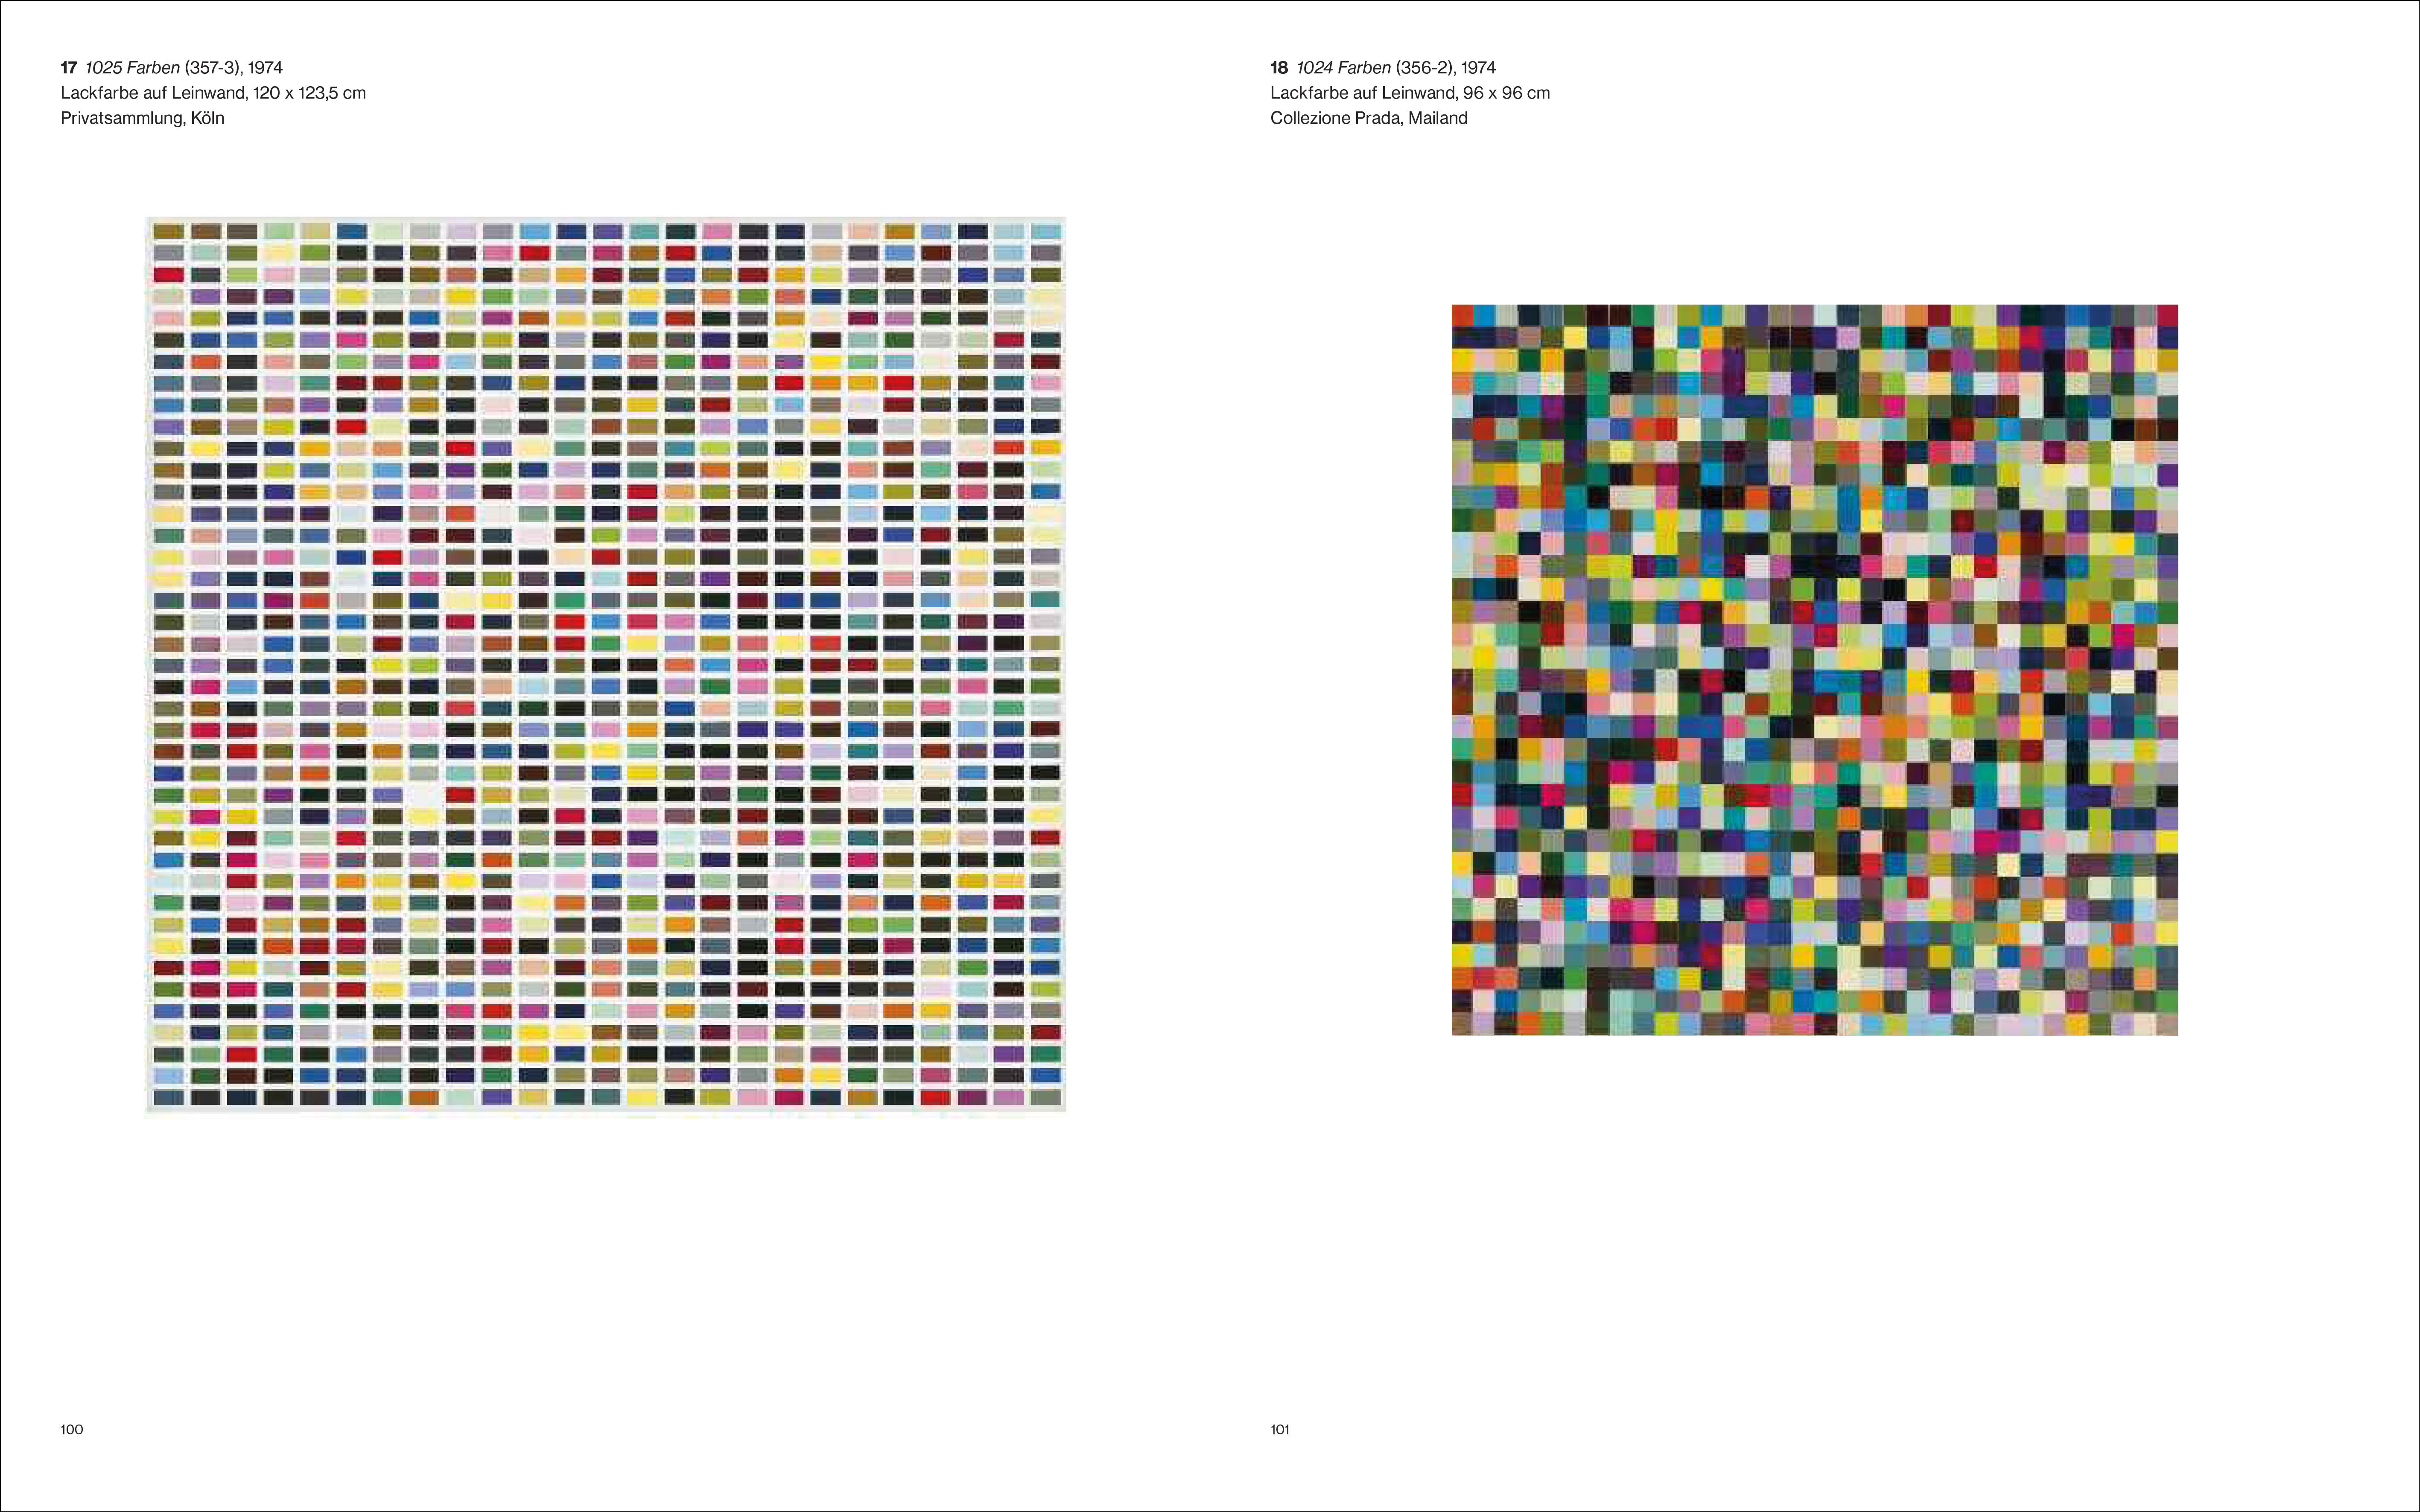  Gerhard Richter  | Abstraktion - Hardcover (2023)